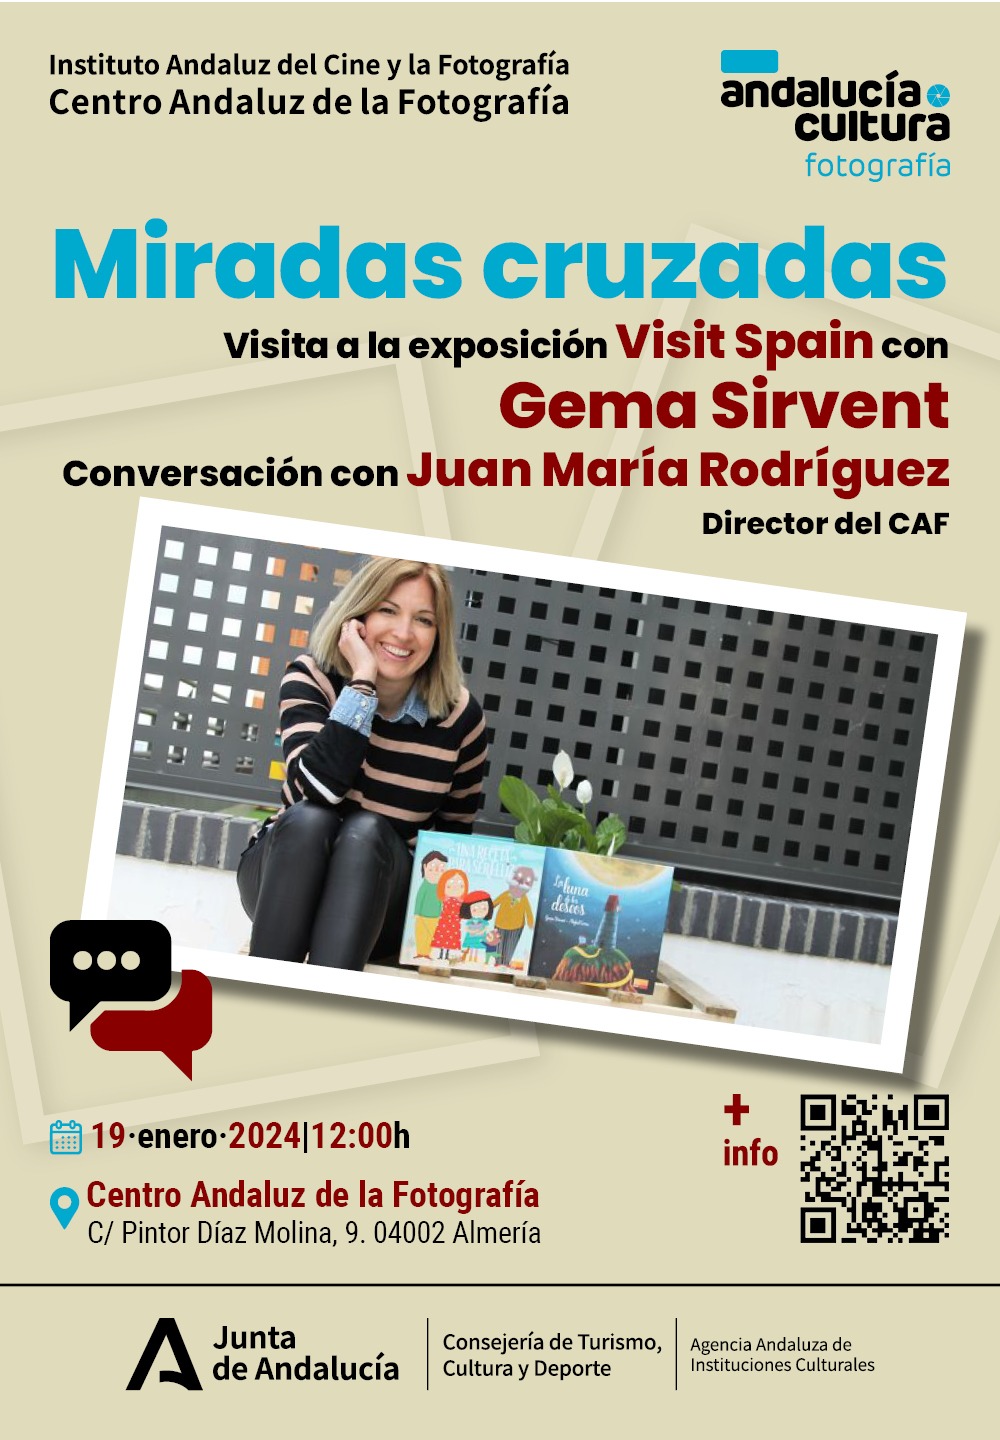 Miradas cruzadas - Visita con Gema Sirvent y conversación con Juan María Rodriguez